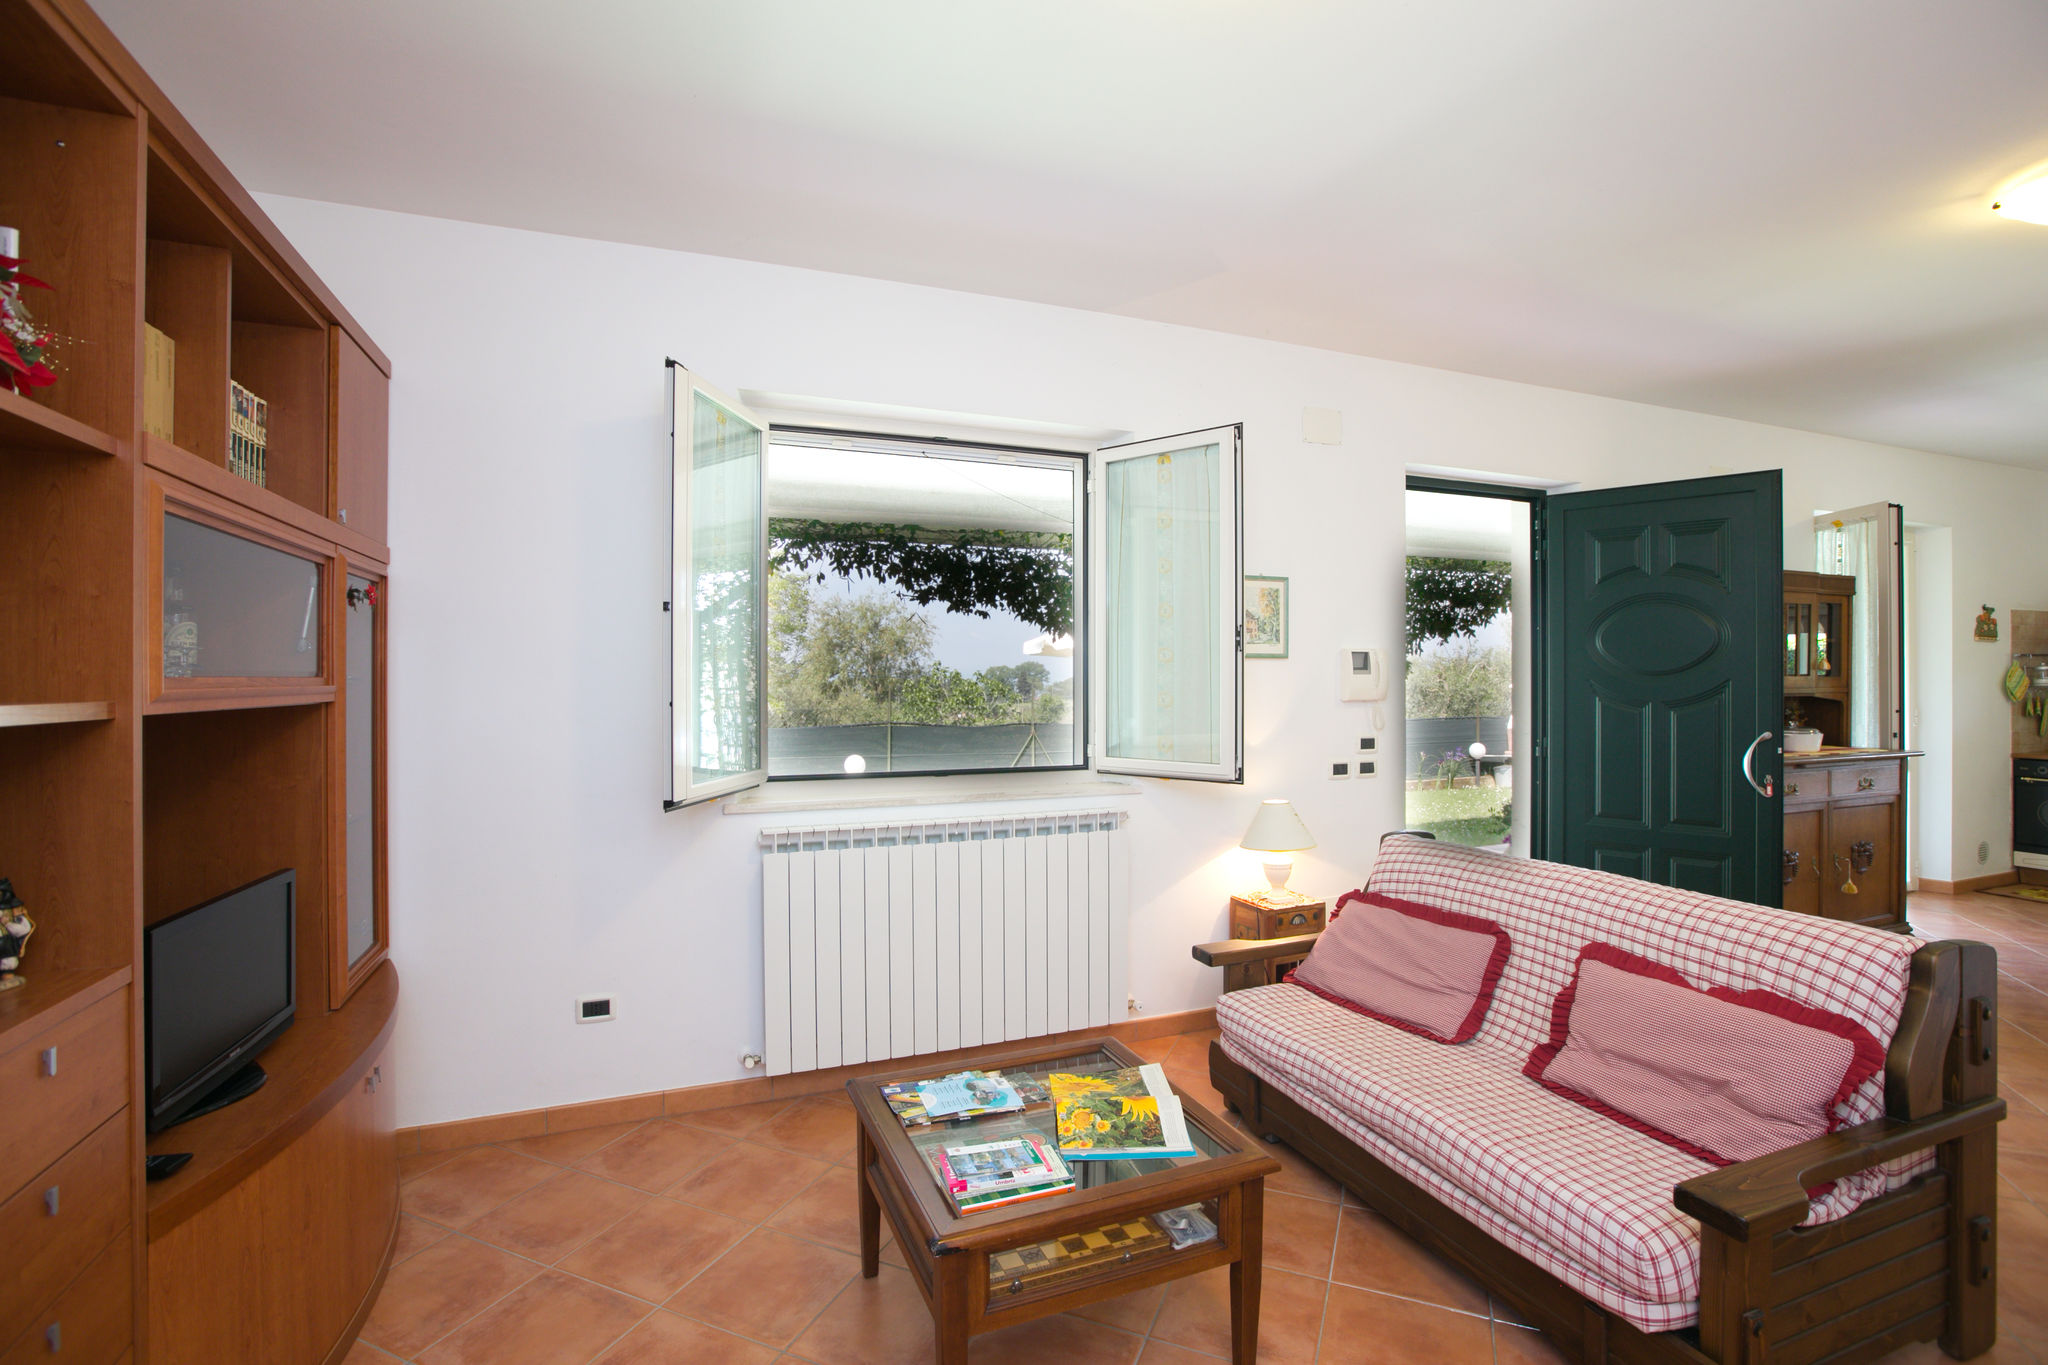 Kleines Ferienhaus in Umbrien, ideal für 4 Personen